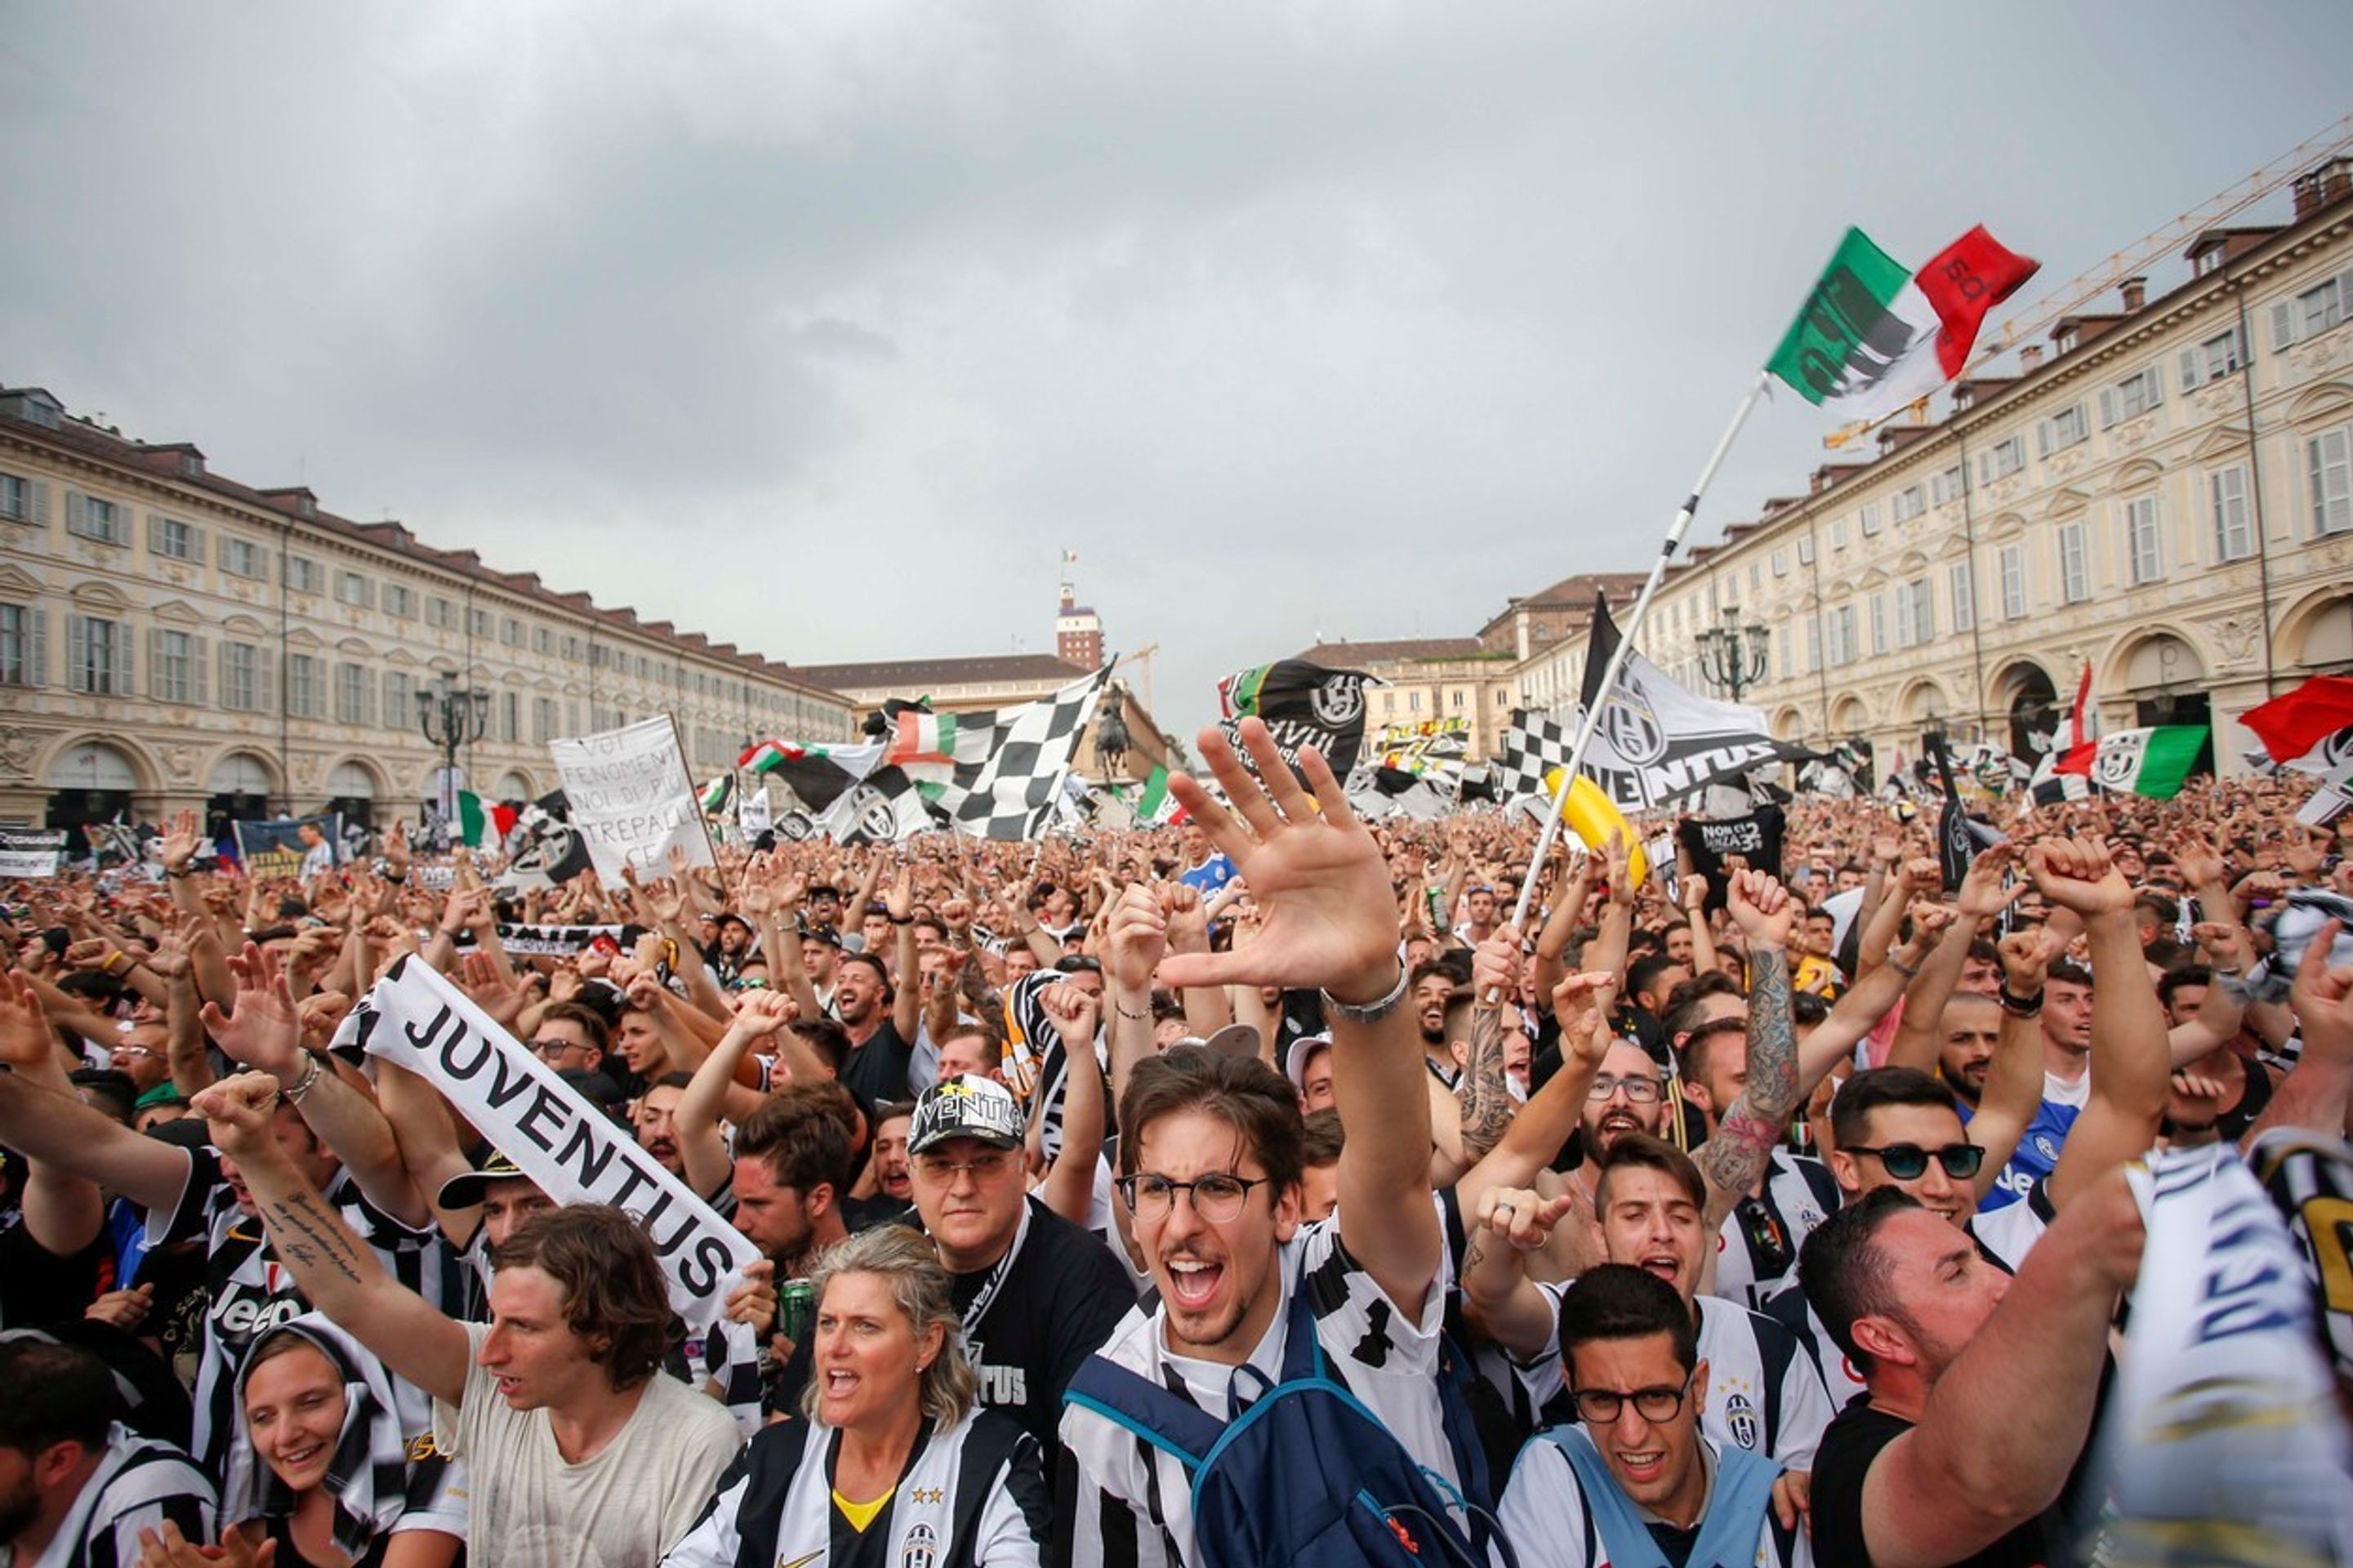 Fanoušci na Piazza San Carlo - GALERIE: Obrázky po výbuchu mezi fanoušky v Turíně (1/10)